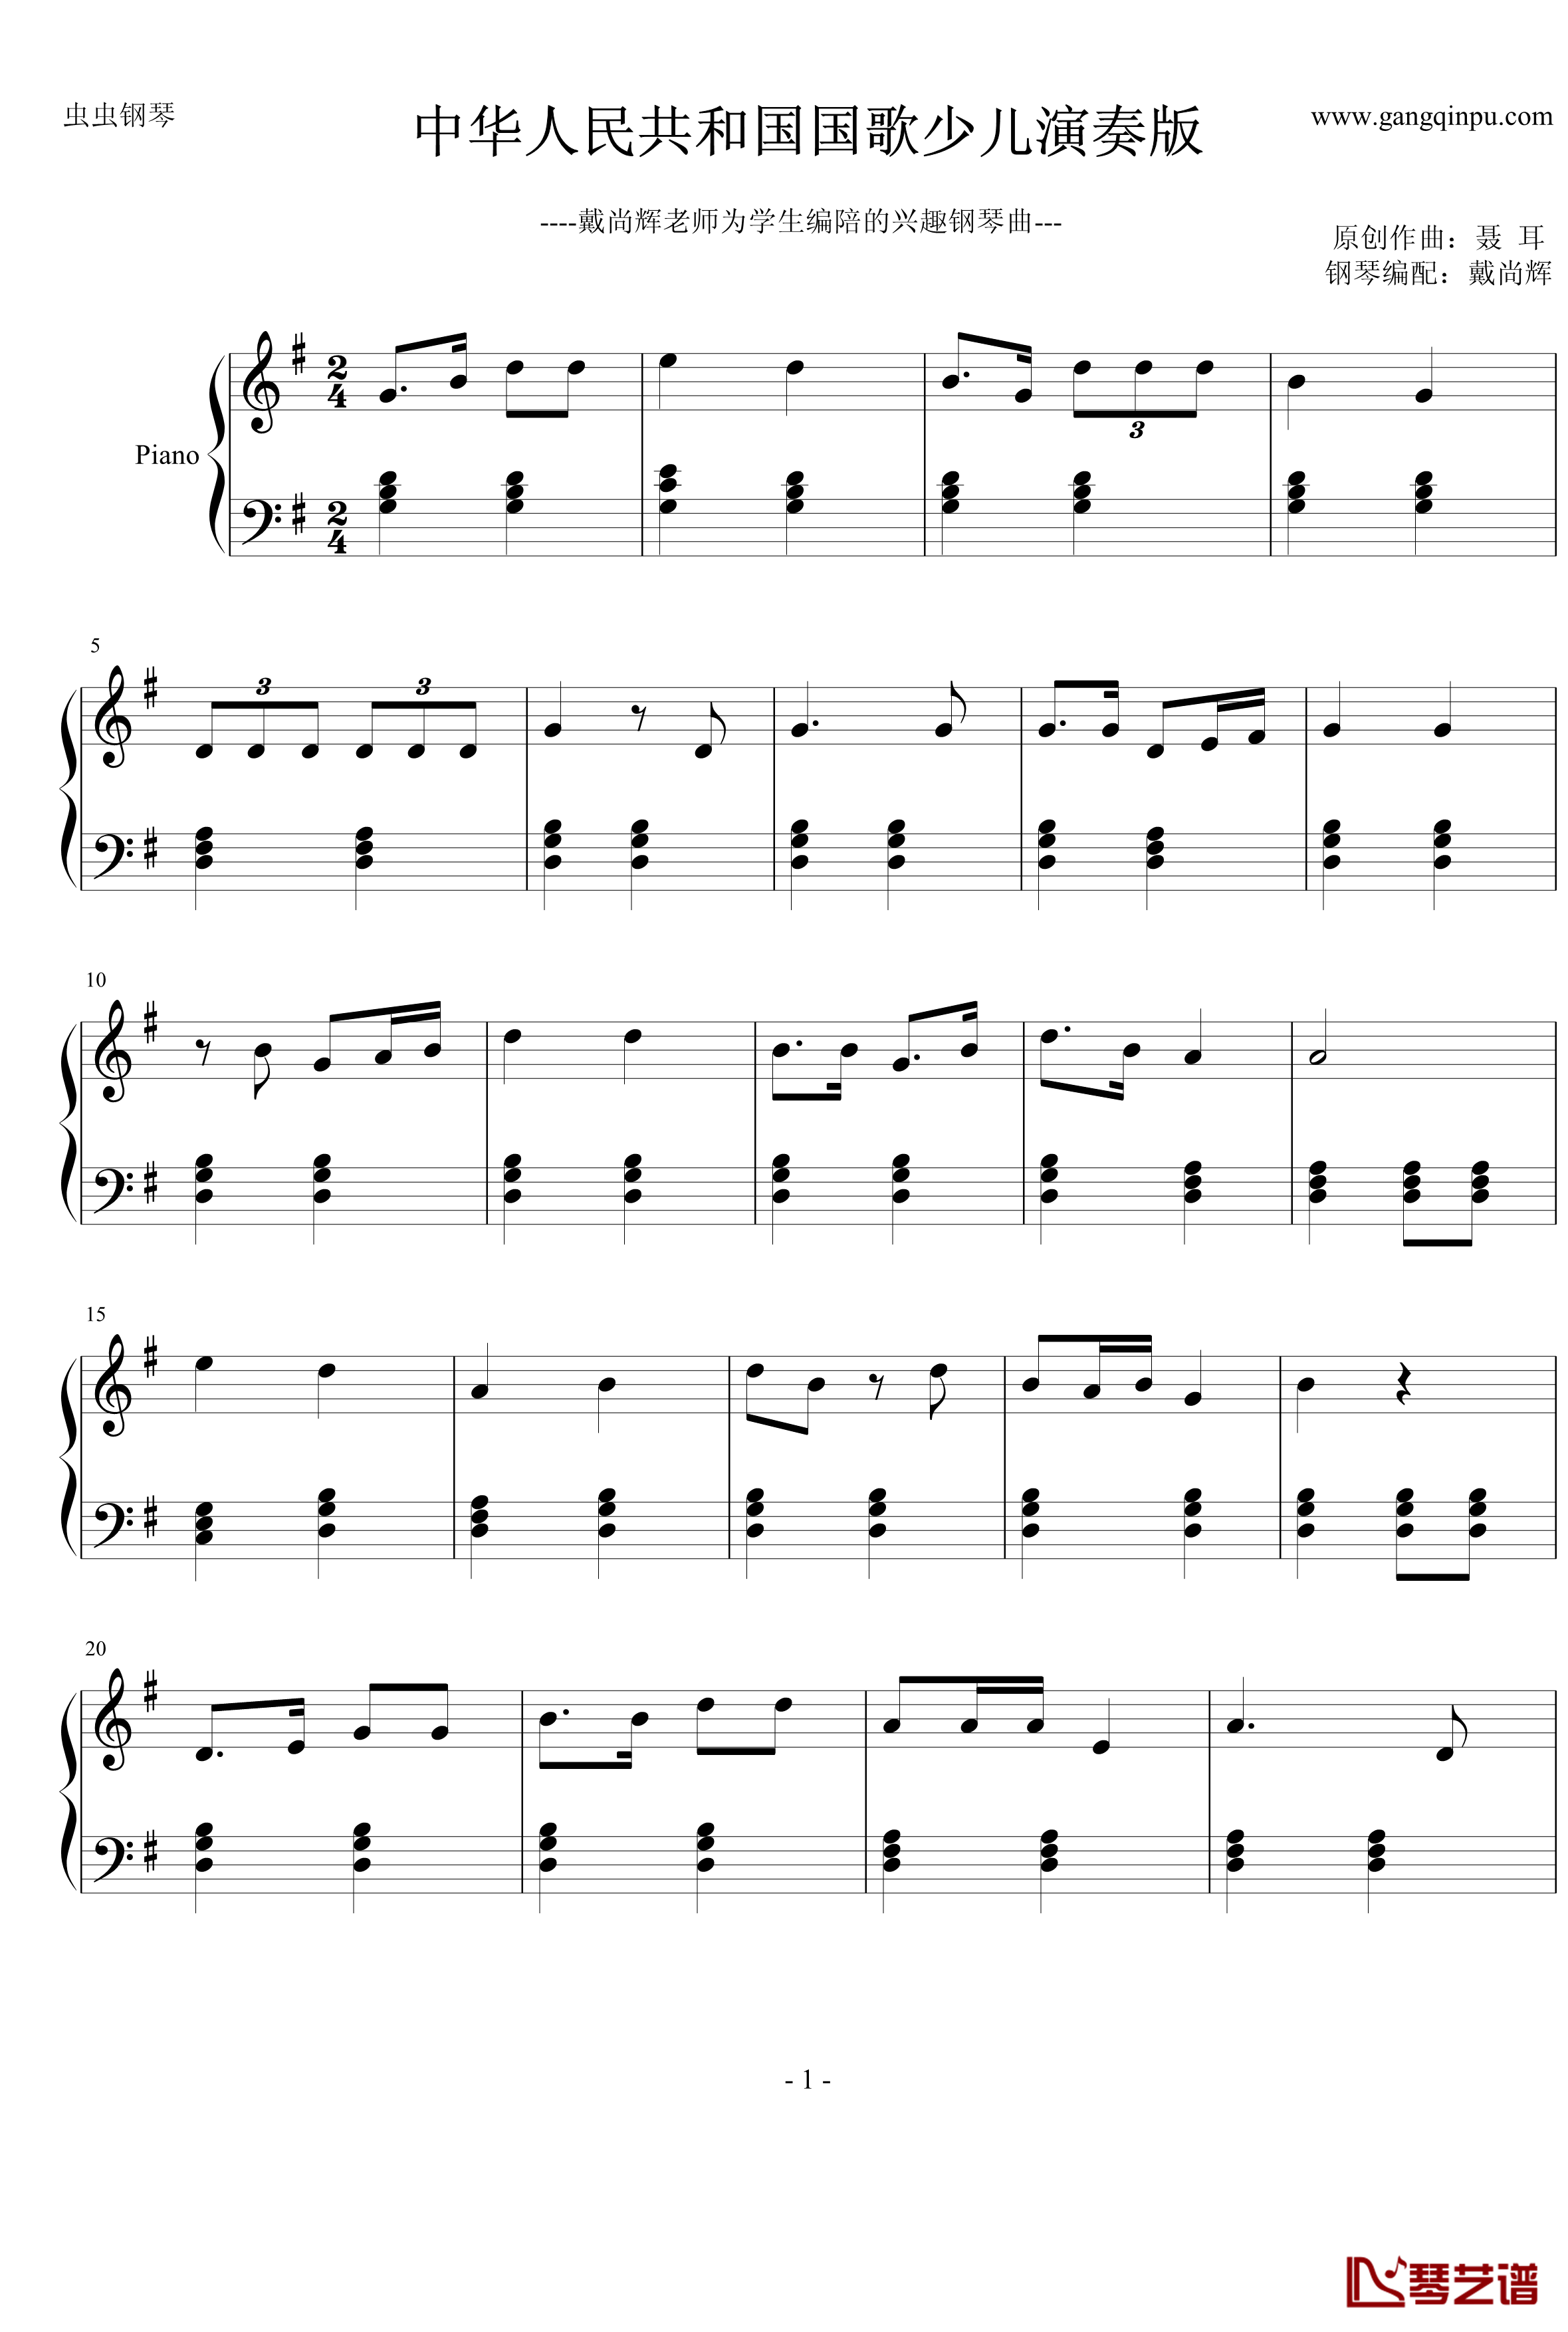 中华人民共和国国歌少儿钢琴谱-简单版-聂耳1